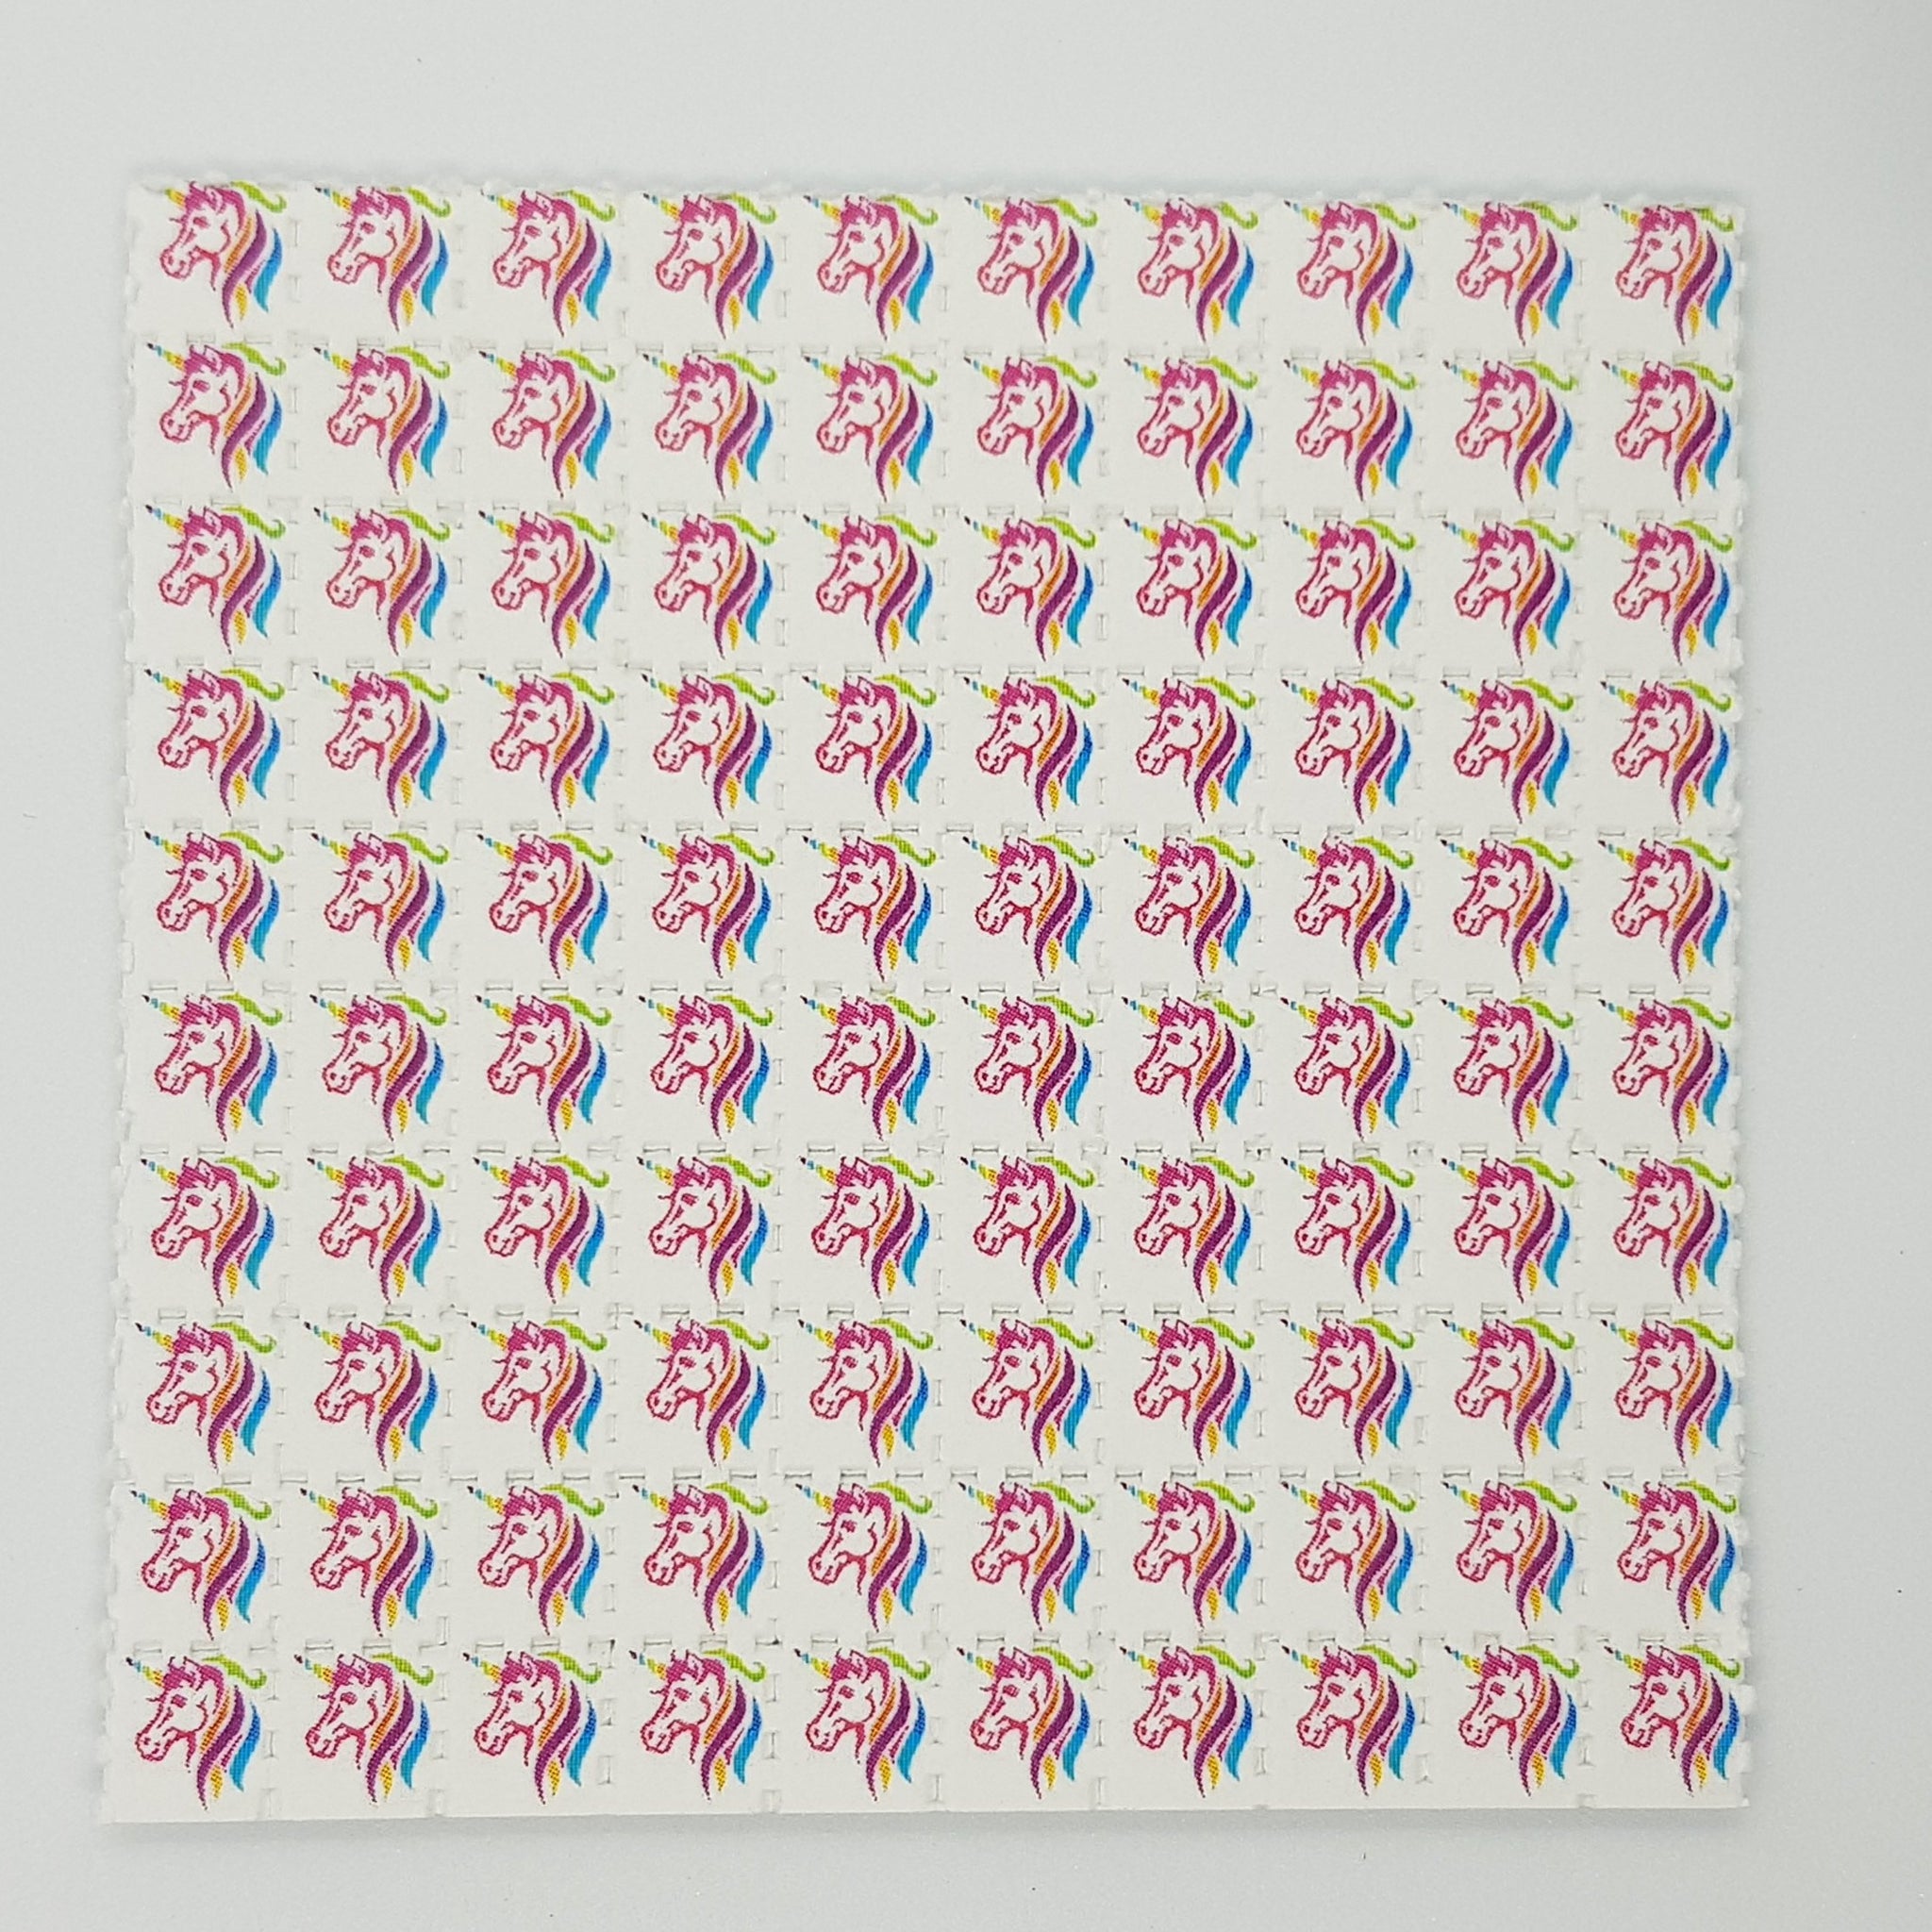 Pink unicorn LSD Tabs Blotter Art